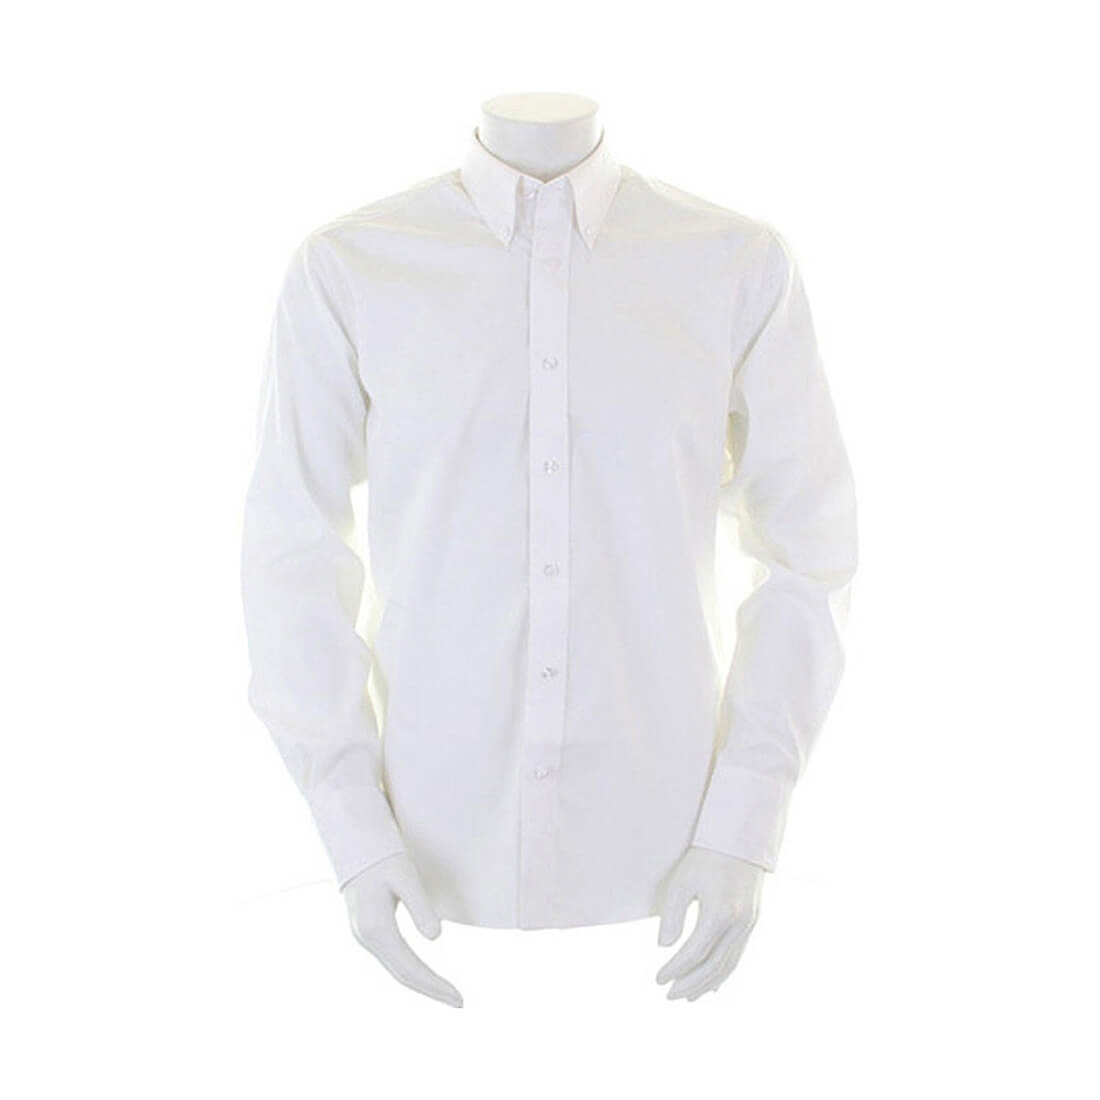 Camicia LS Tailored Fit Premium Oxford - Abbigliamento di protezione